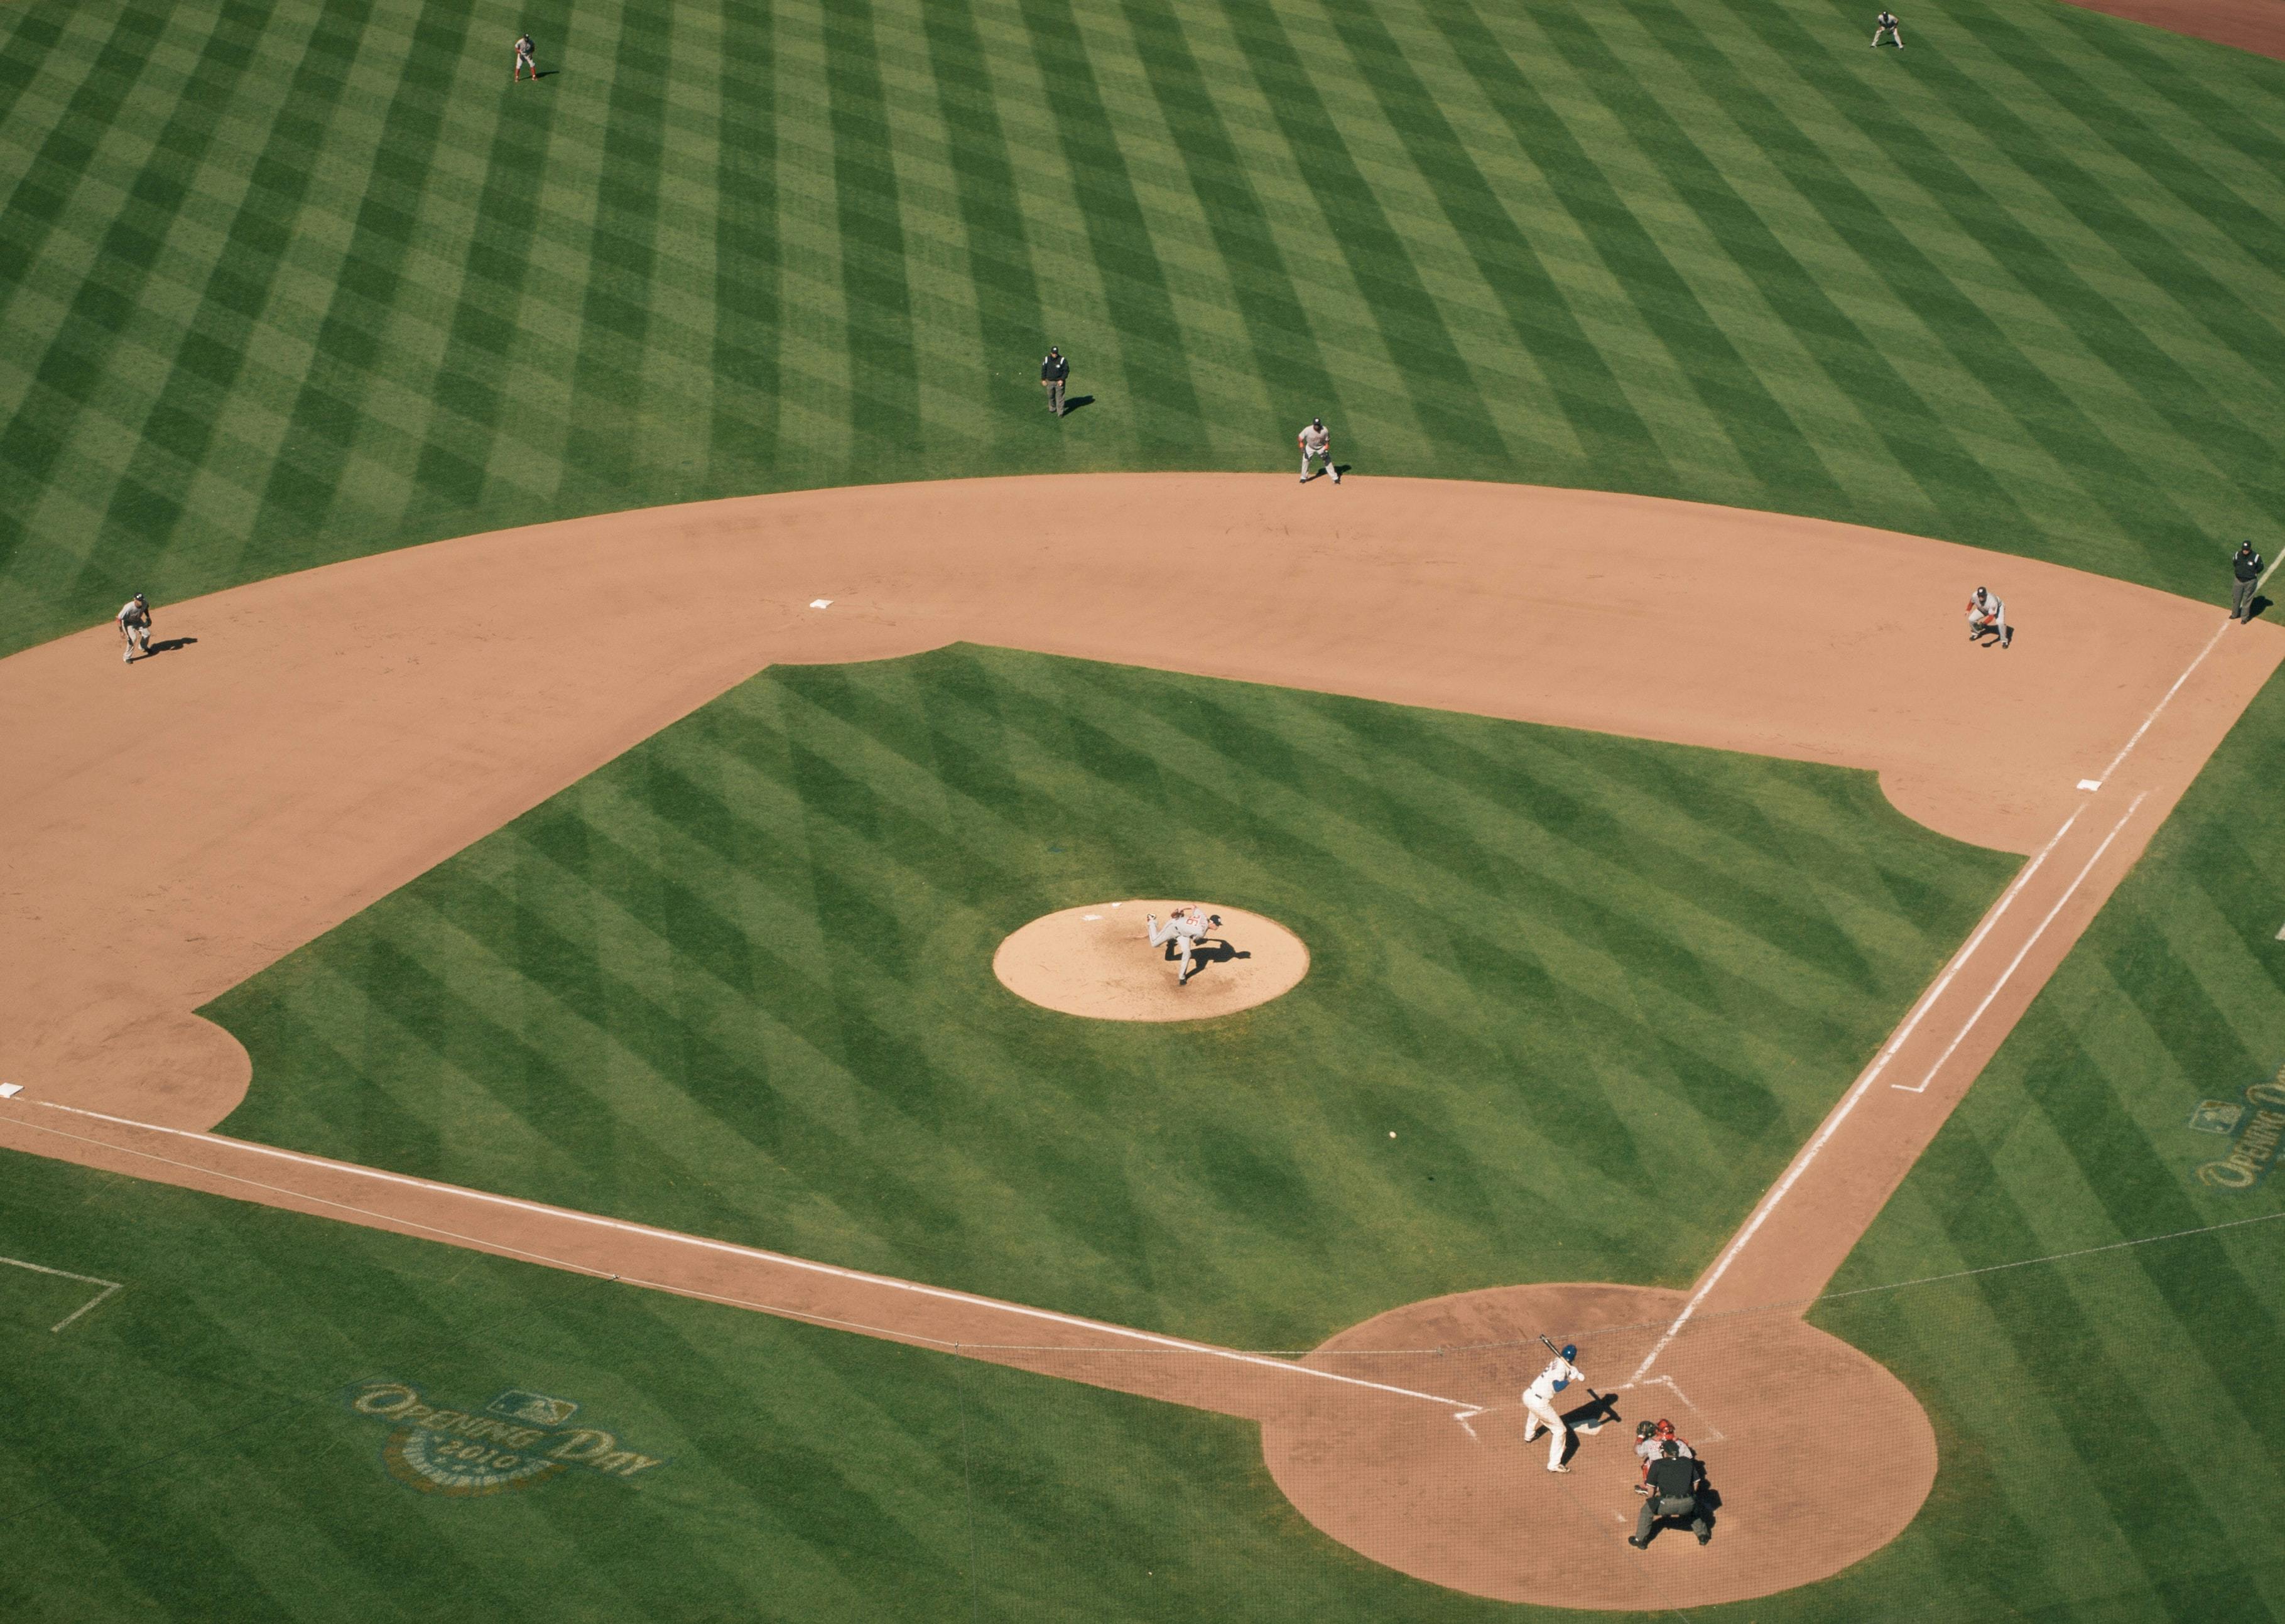 Baseball game at Citi Field, New York